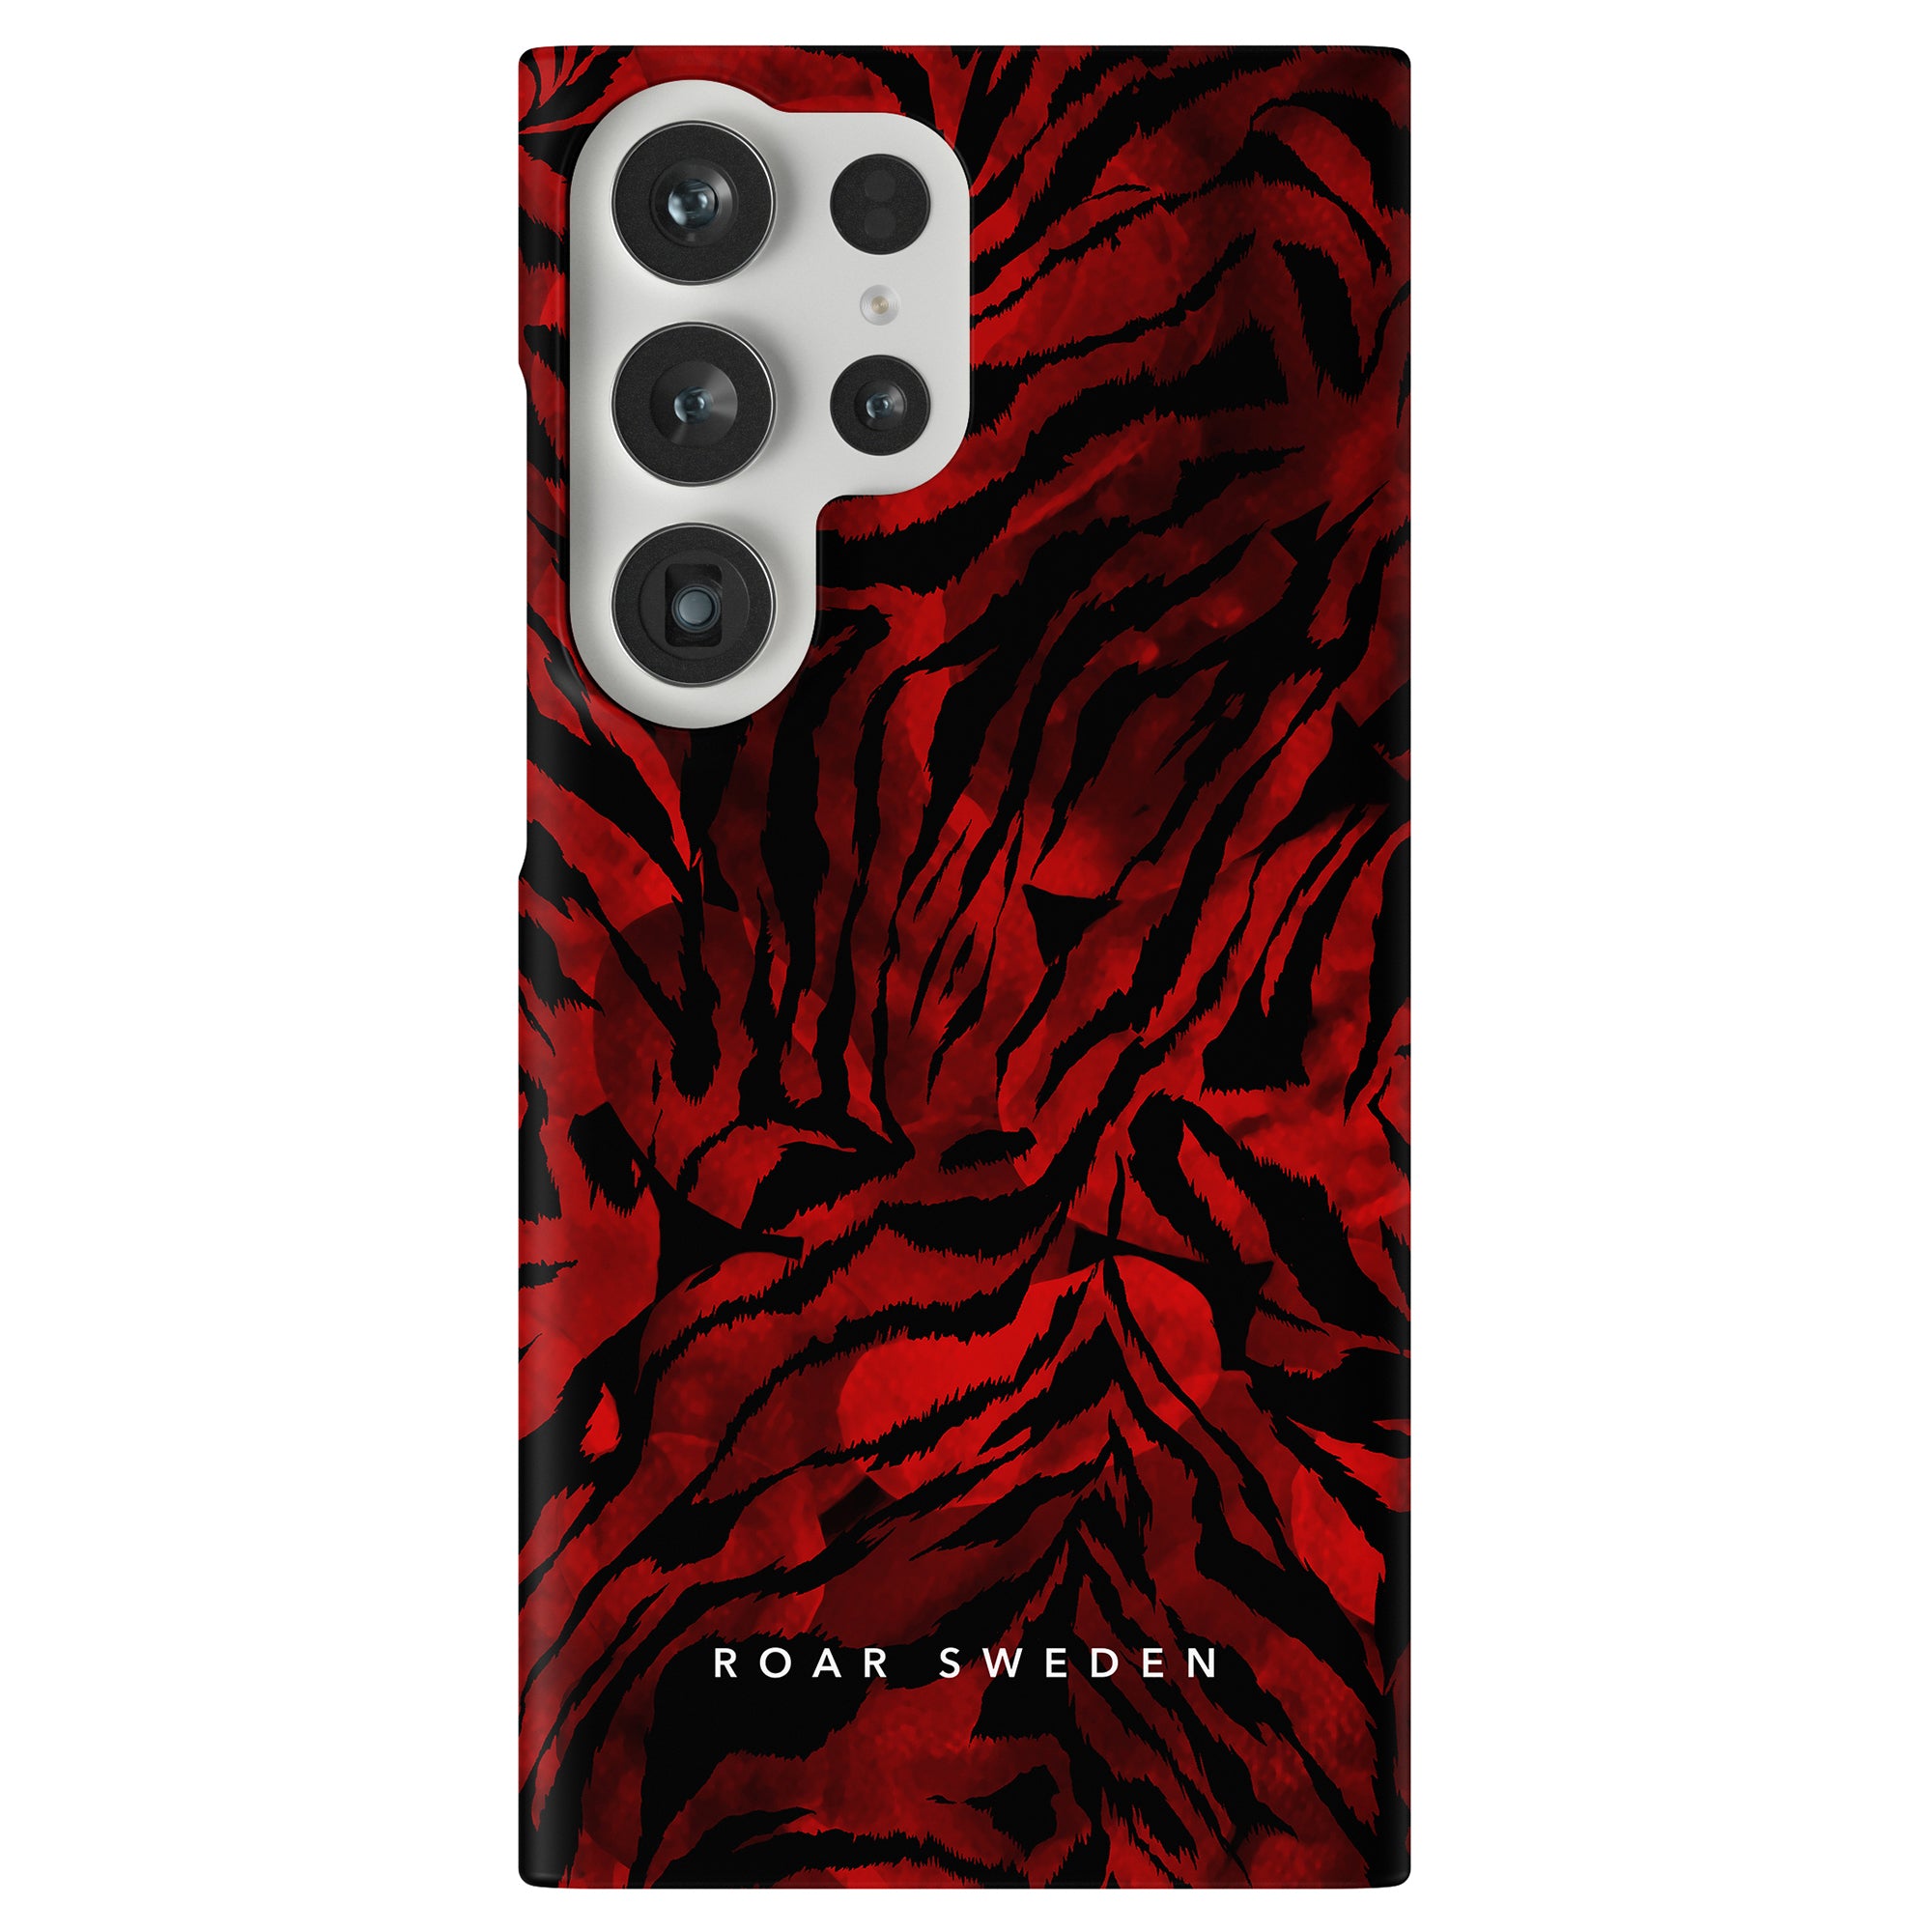 Produktbeskrivning: Med ett livfullt Blood Tiger-tryck i slående rött och svart är detta telefonfodral ett viktigt tillbehör som kombinerar stil och skydd.